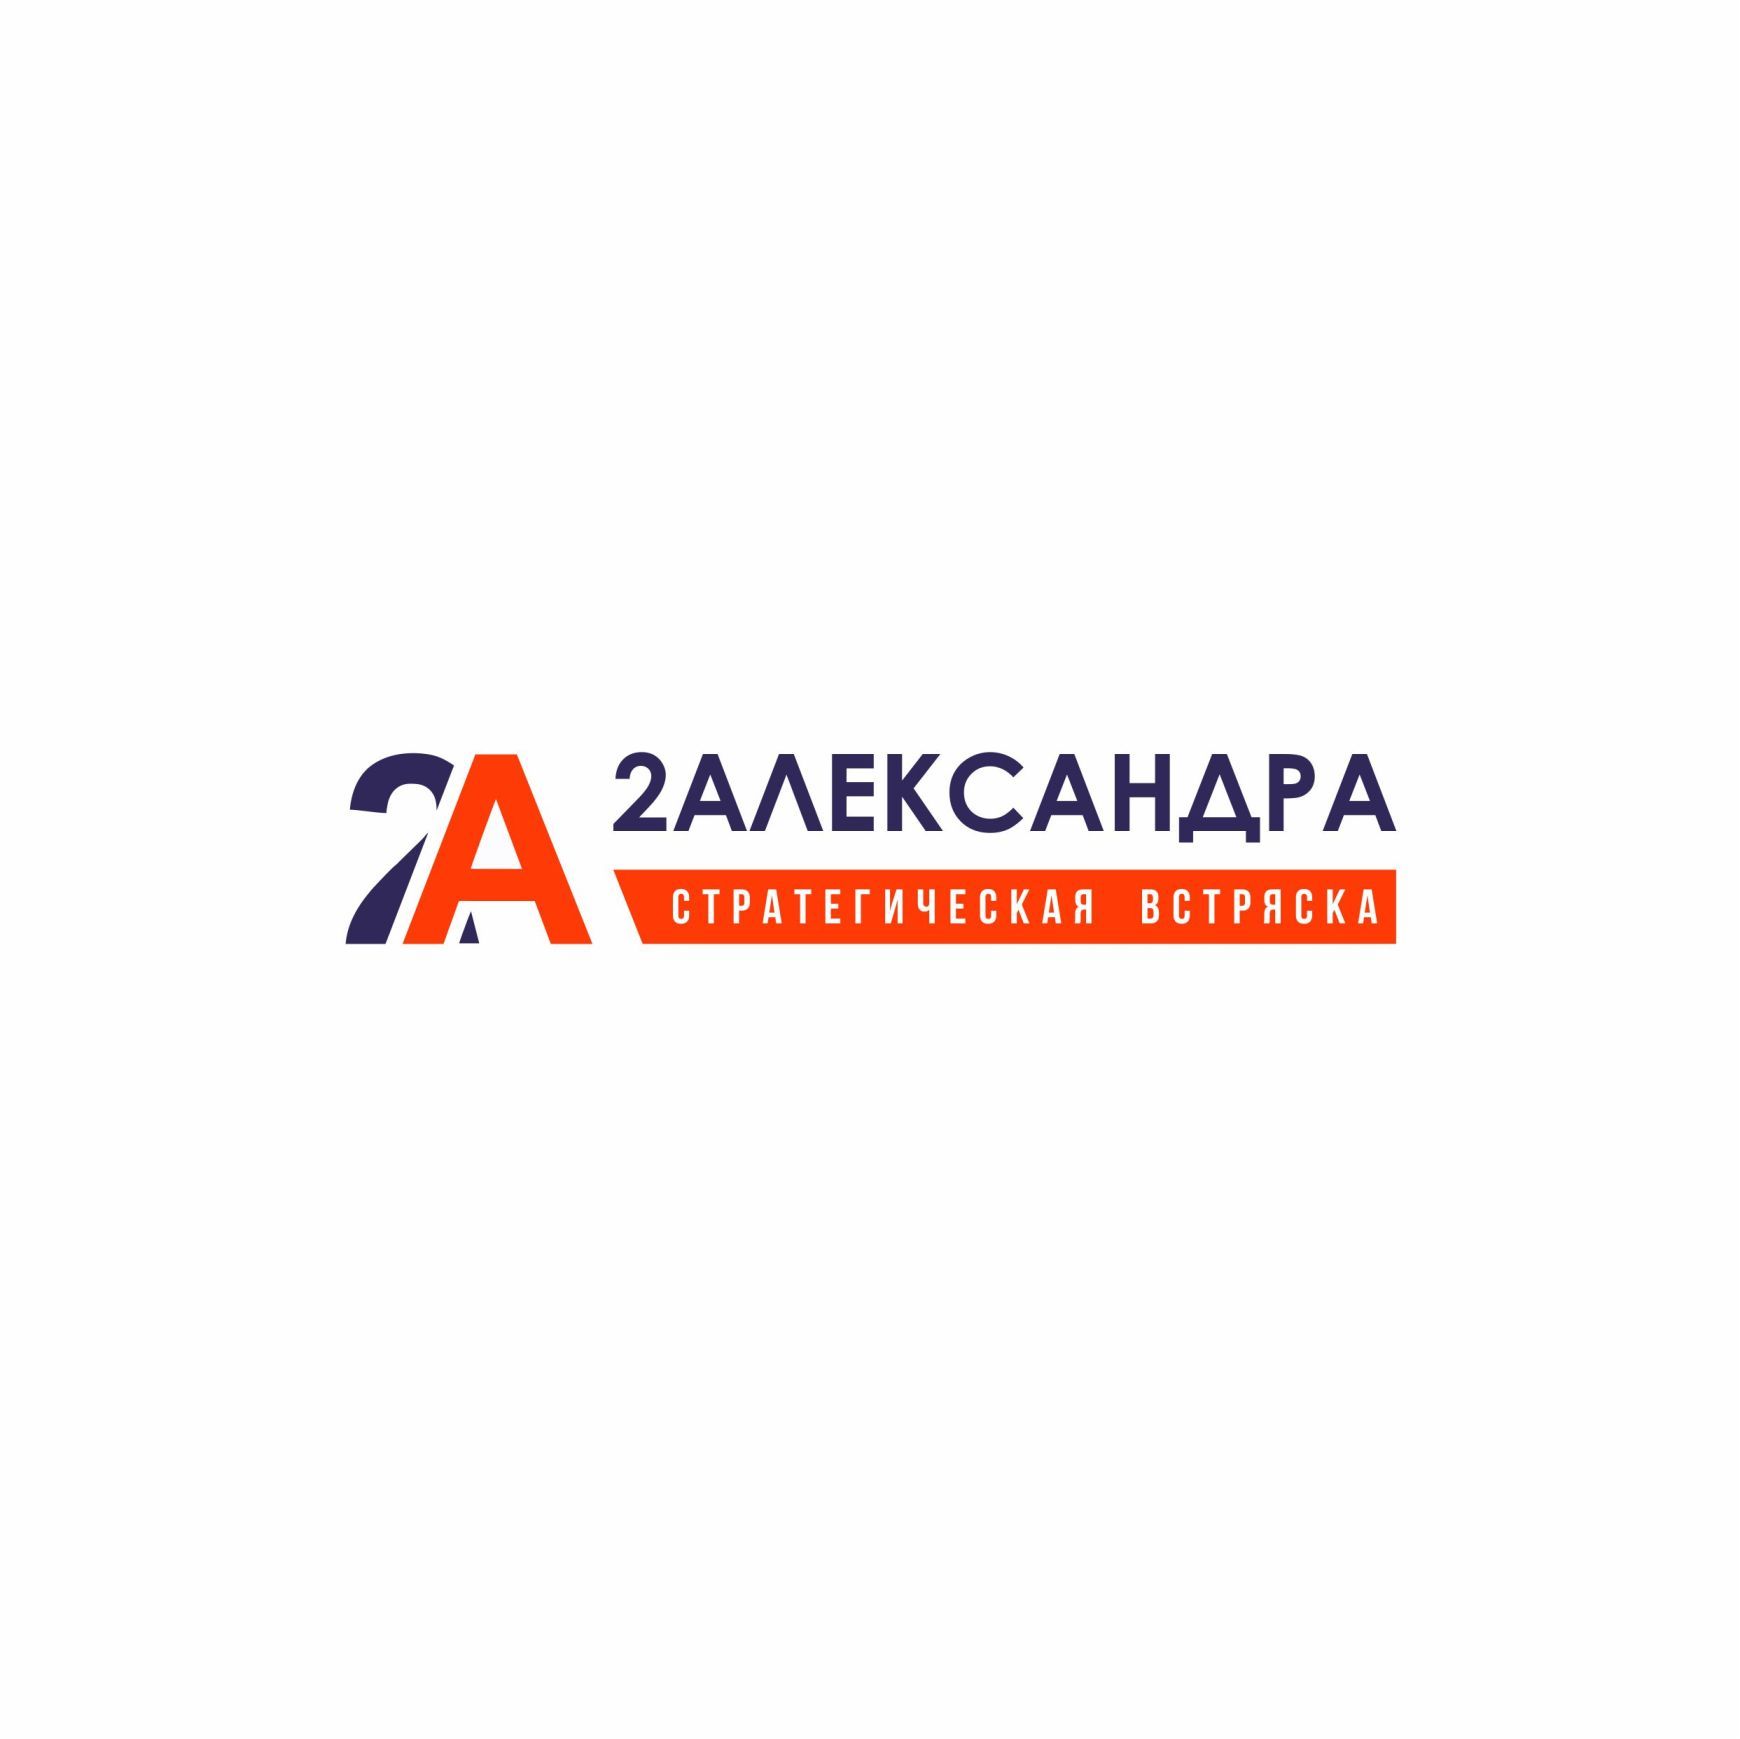 Логотип для 2Александра Стратегическая встряска - дизайнер IRINAF